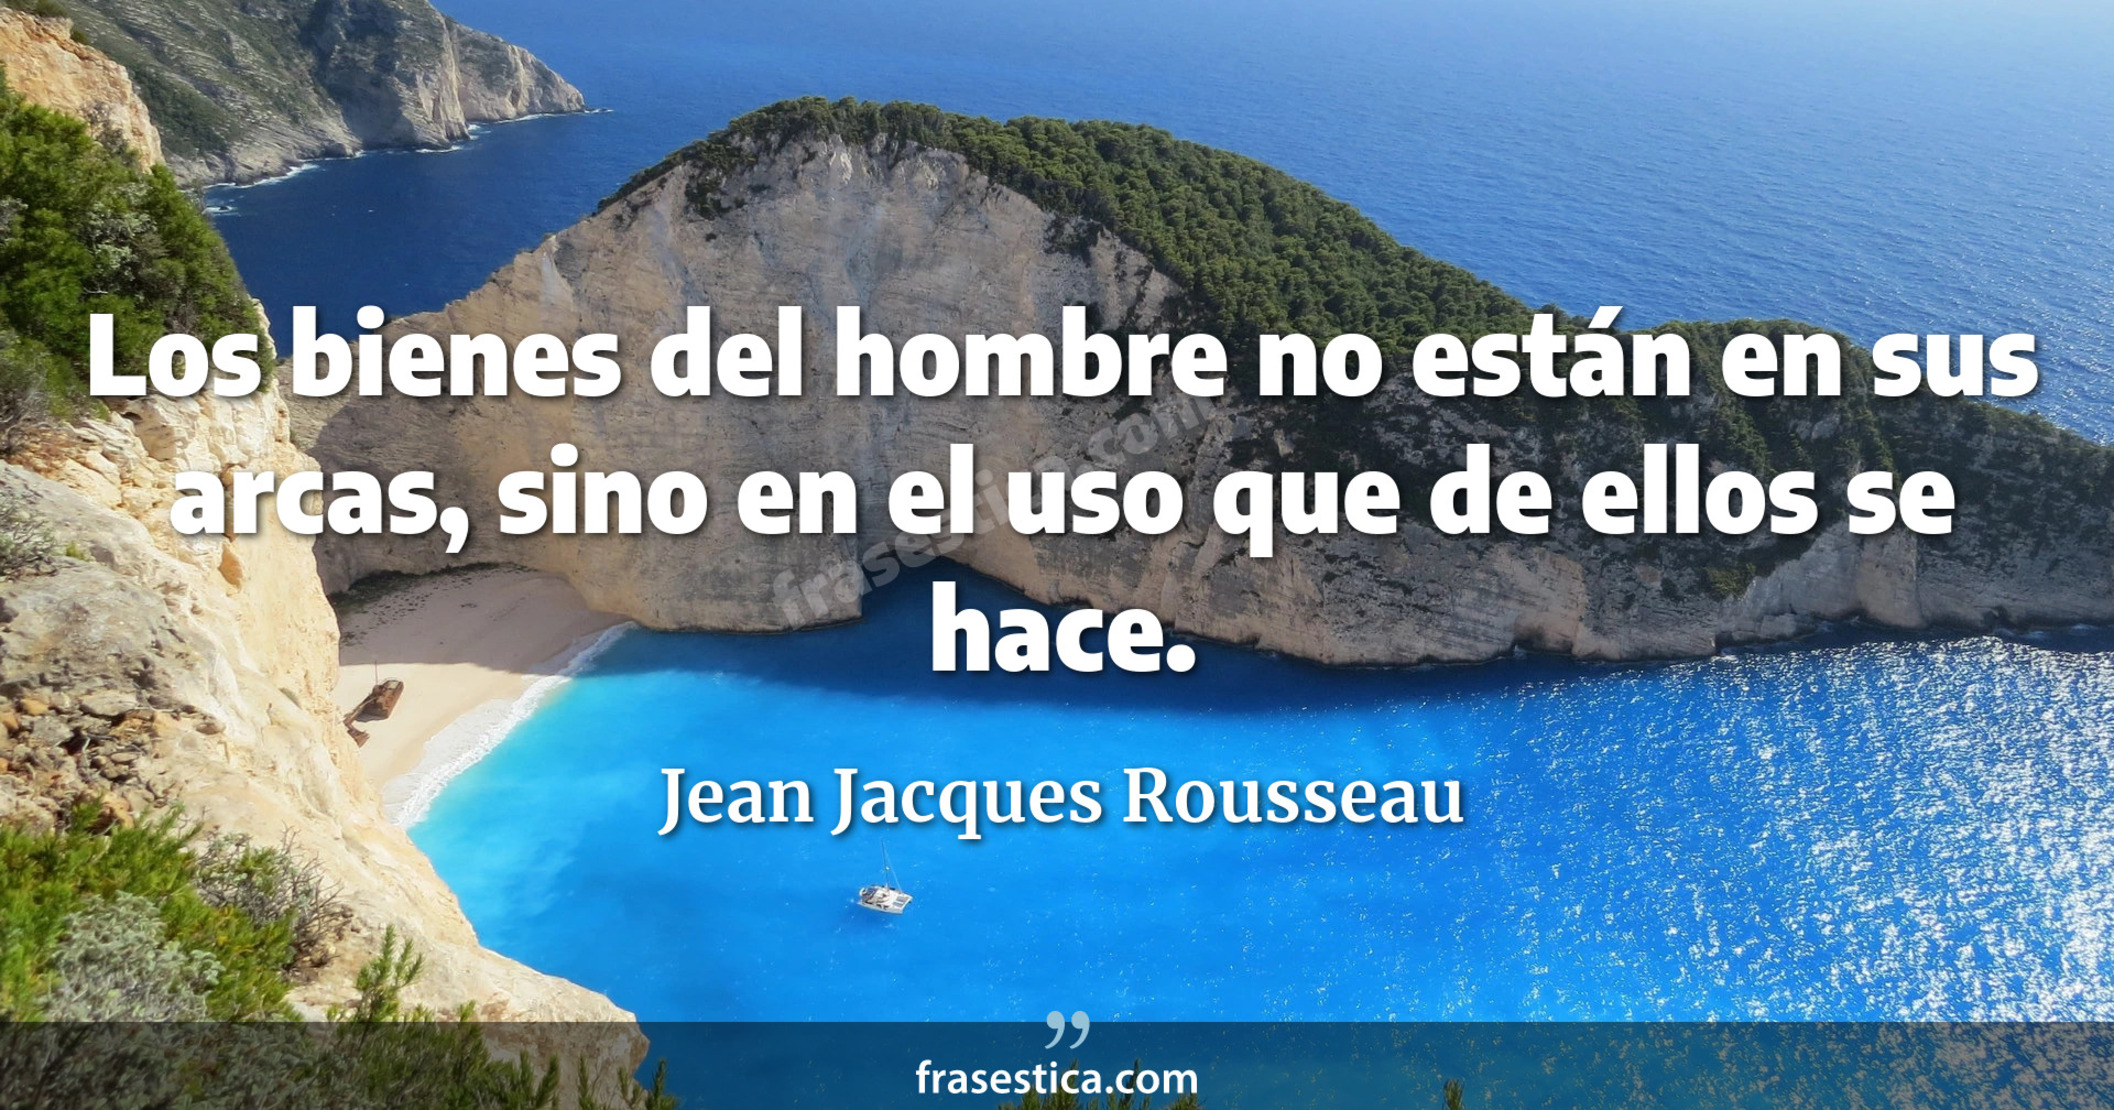 Los bienes del hombre no están en sus arcas, sino en el uso que de ellos se hace. - Jean Jacques Rousseau